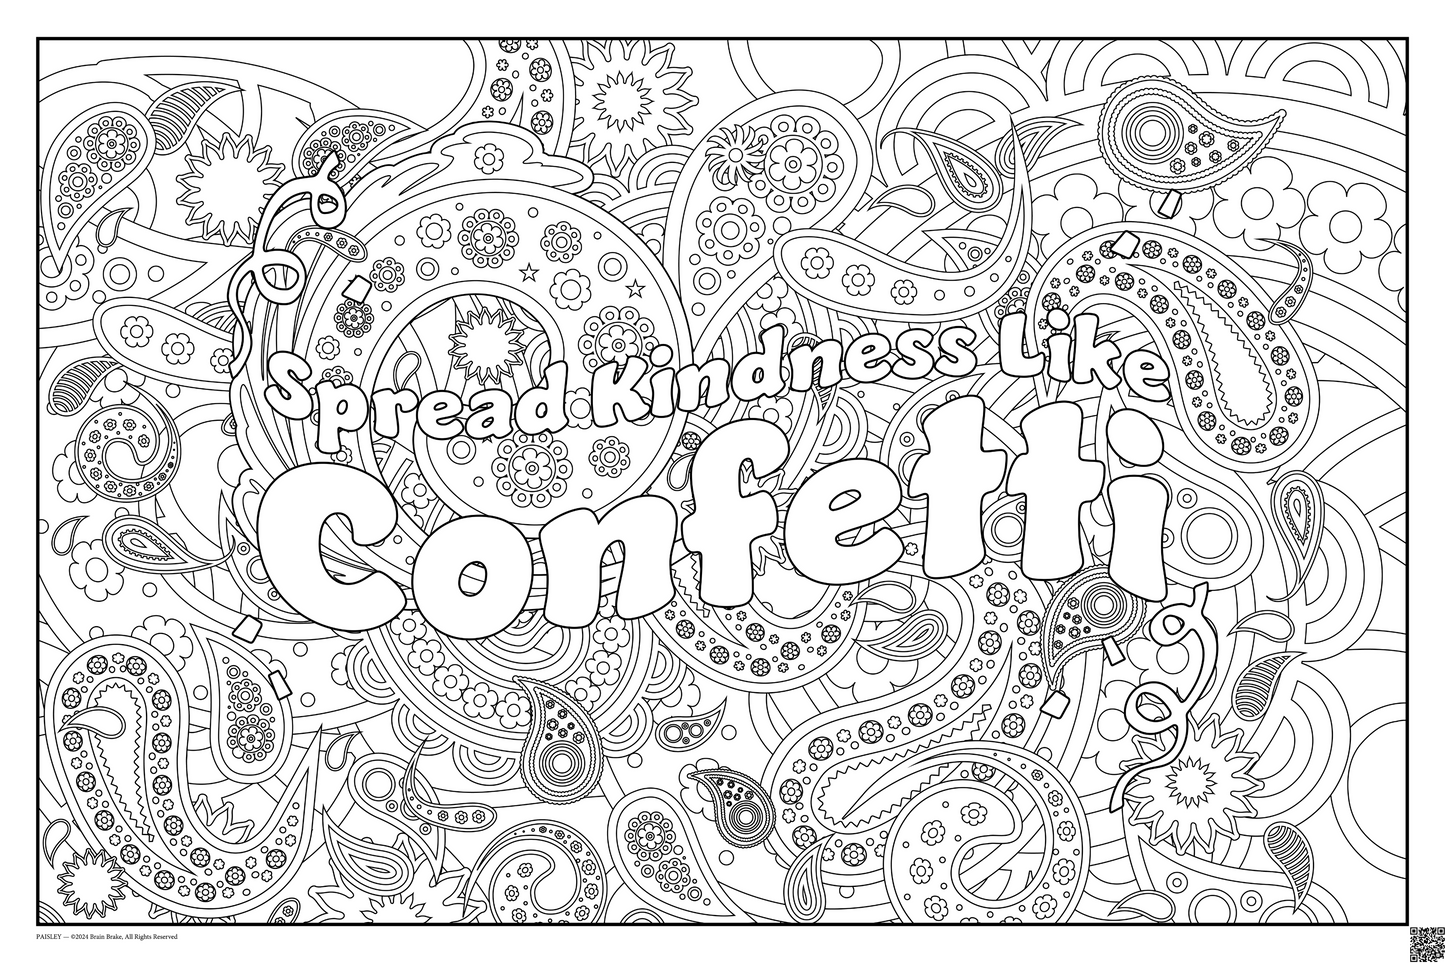 Build Community: Spread Kindness Like Confetti